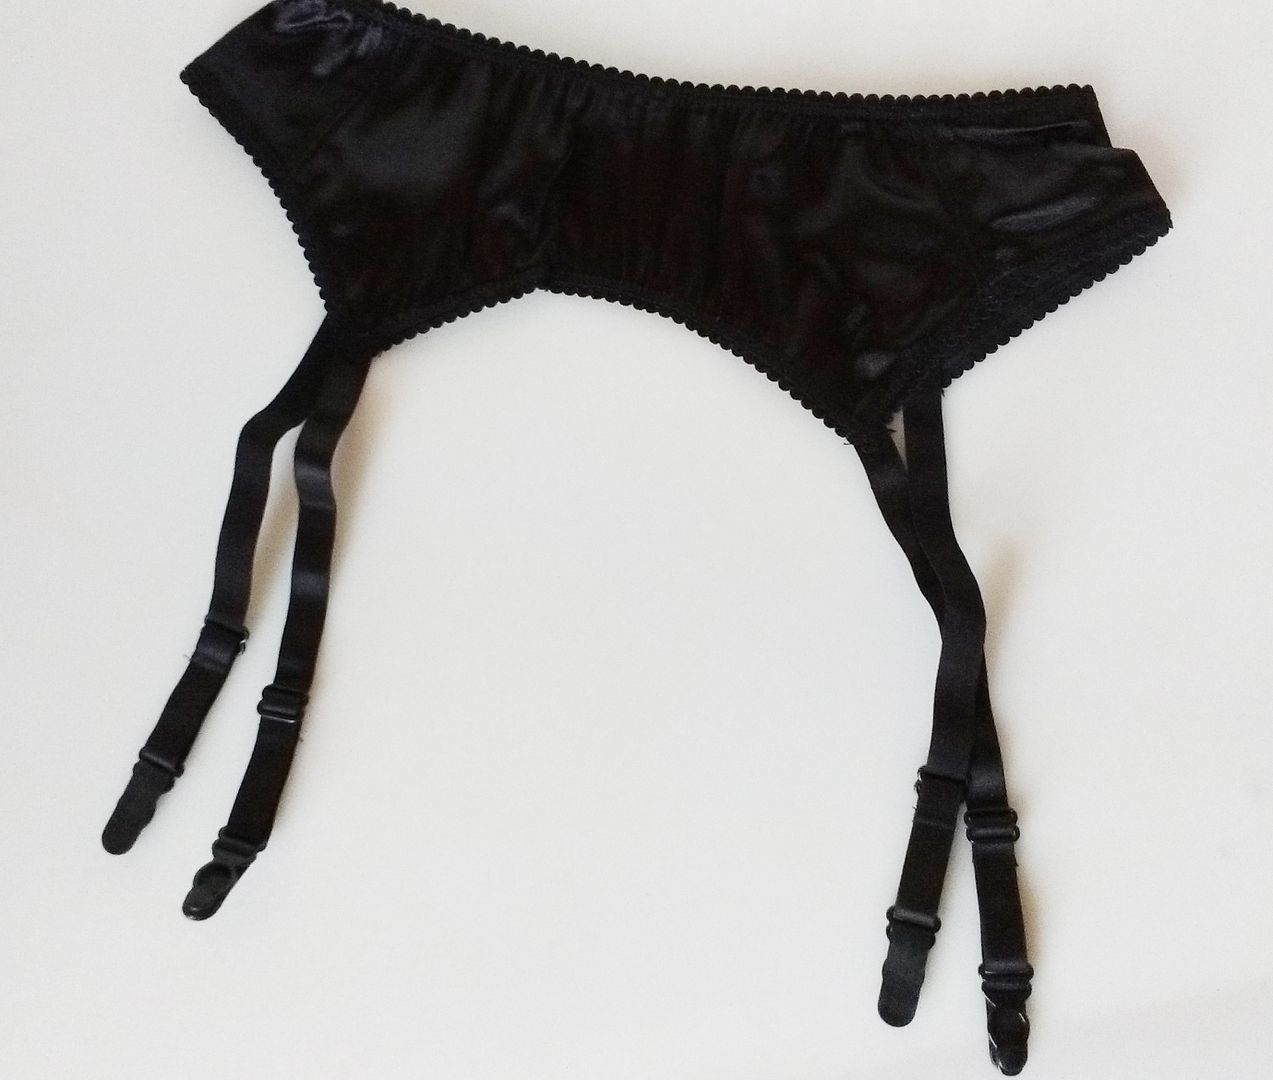 Ladies Black Satin 4 Strap Stocking Garter Suspender Belt 6